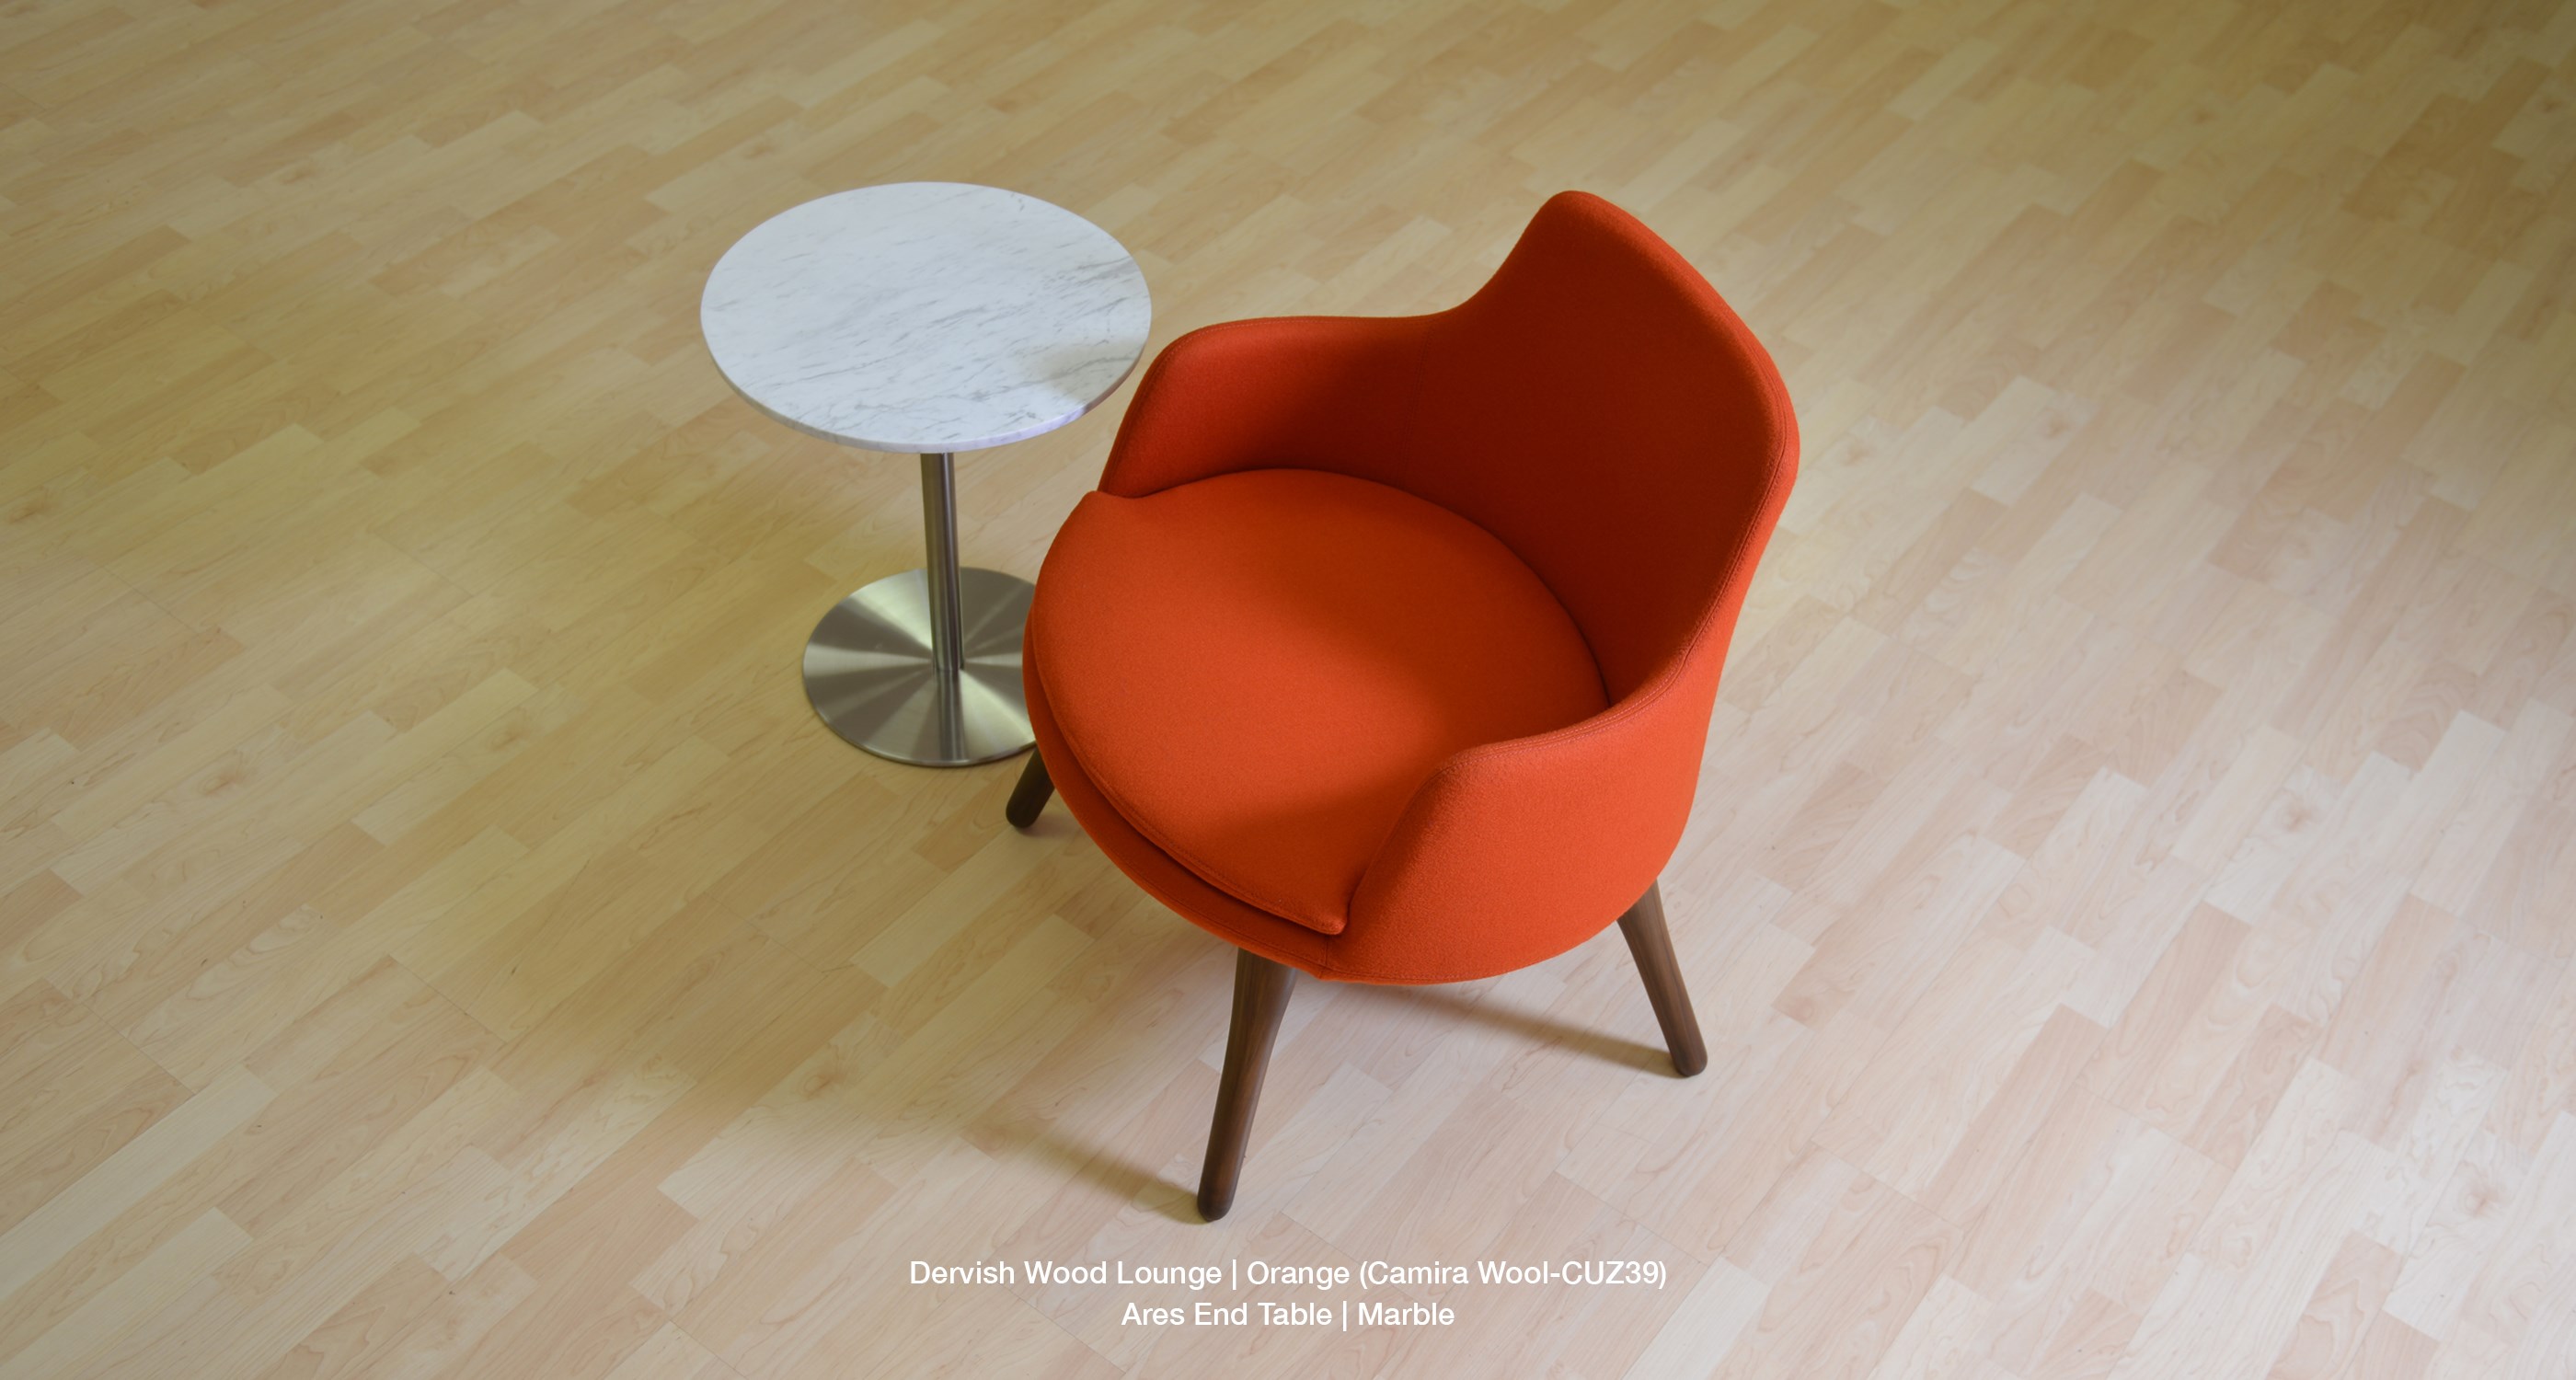 Dervish Wood Lounge Orange Wool